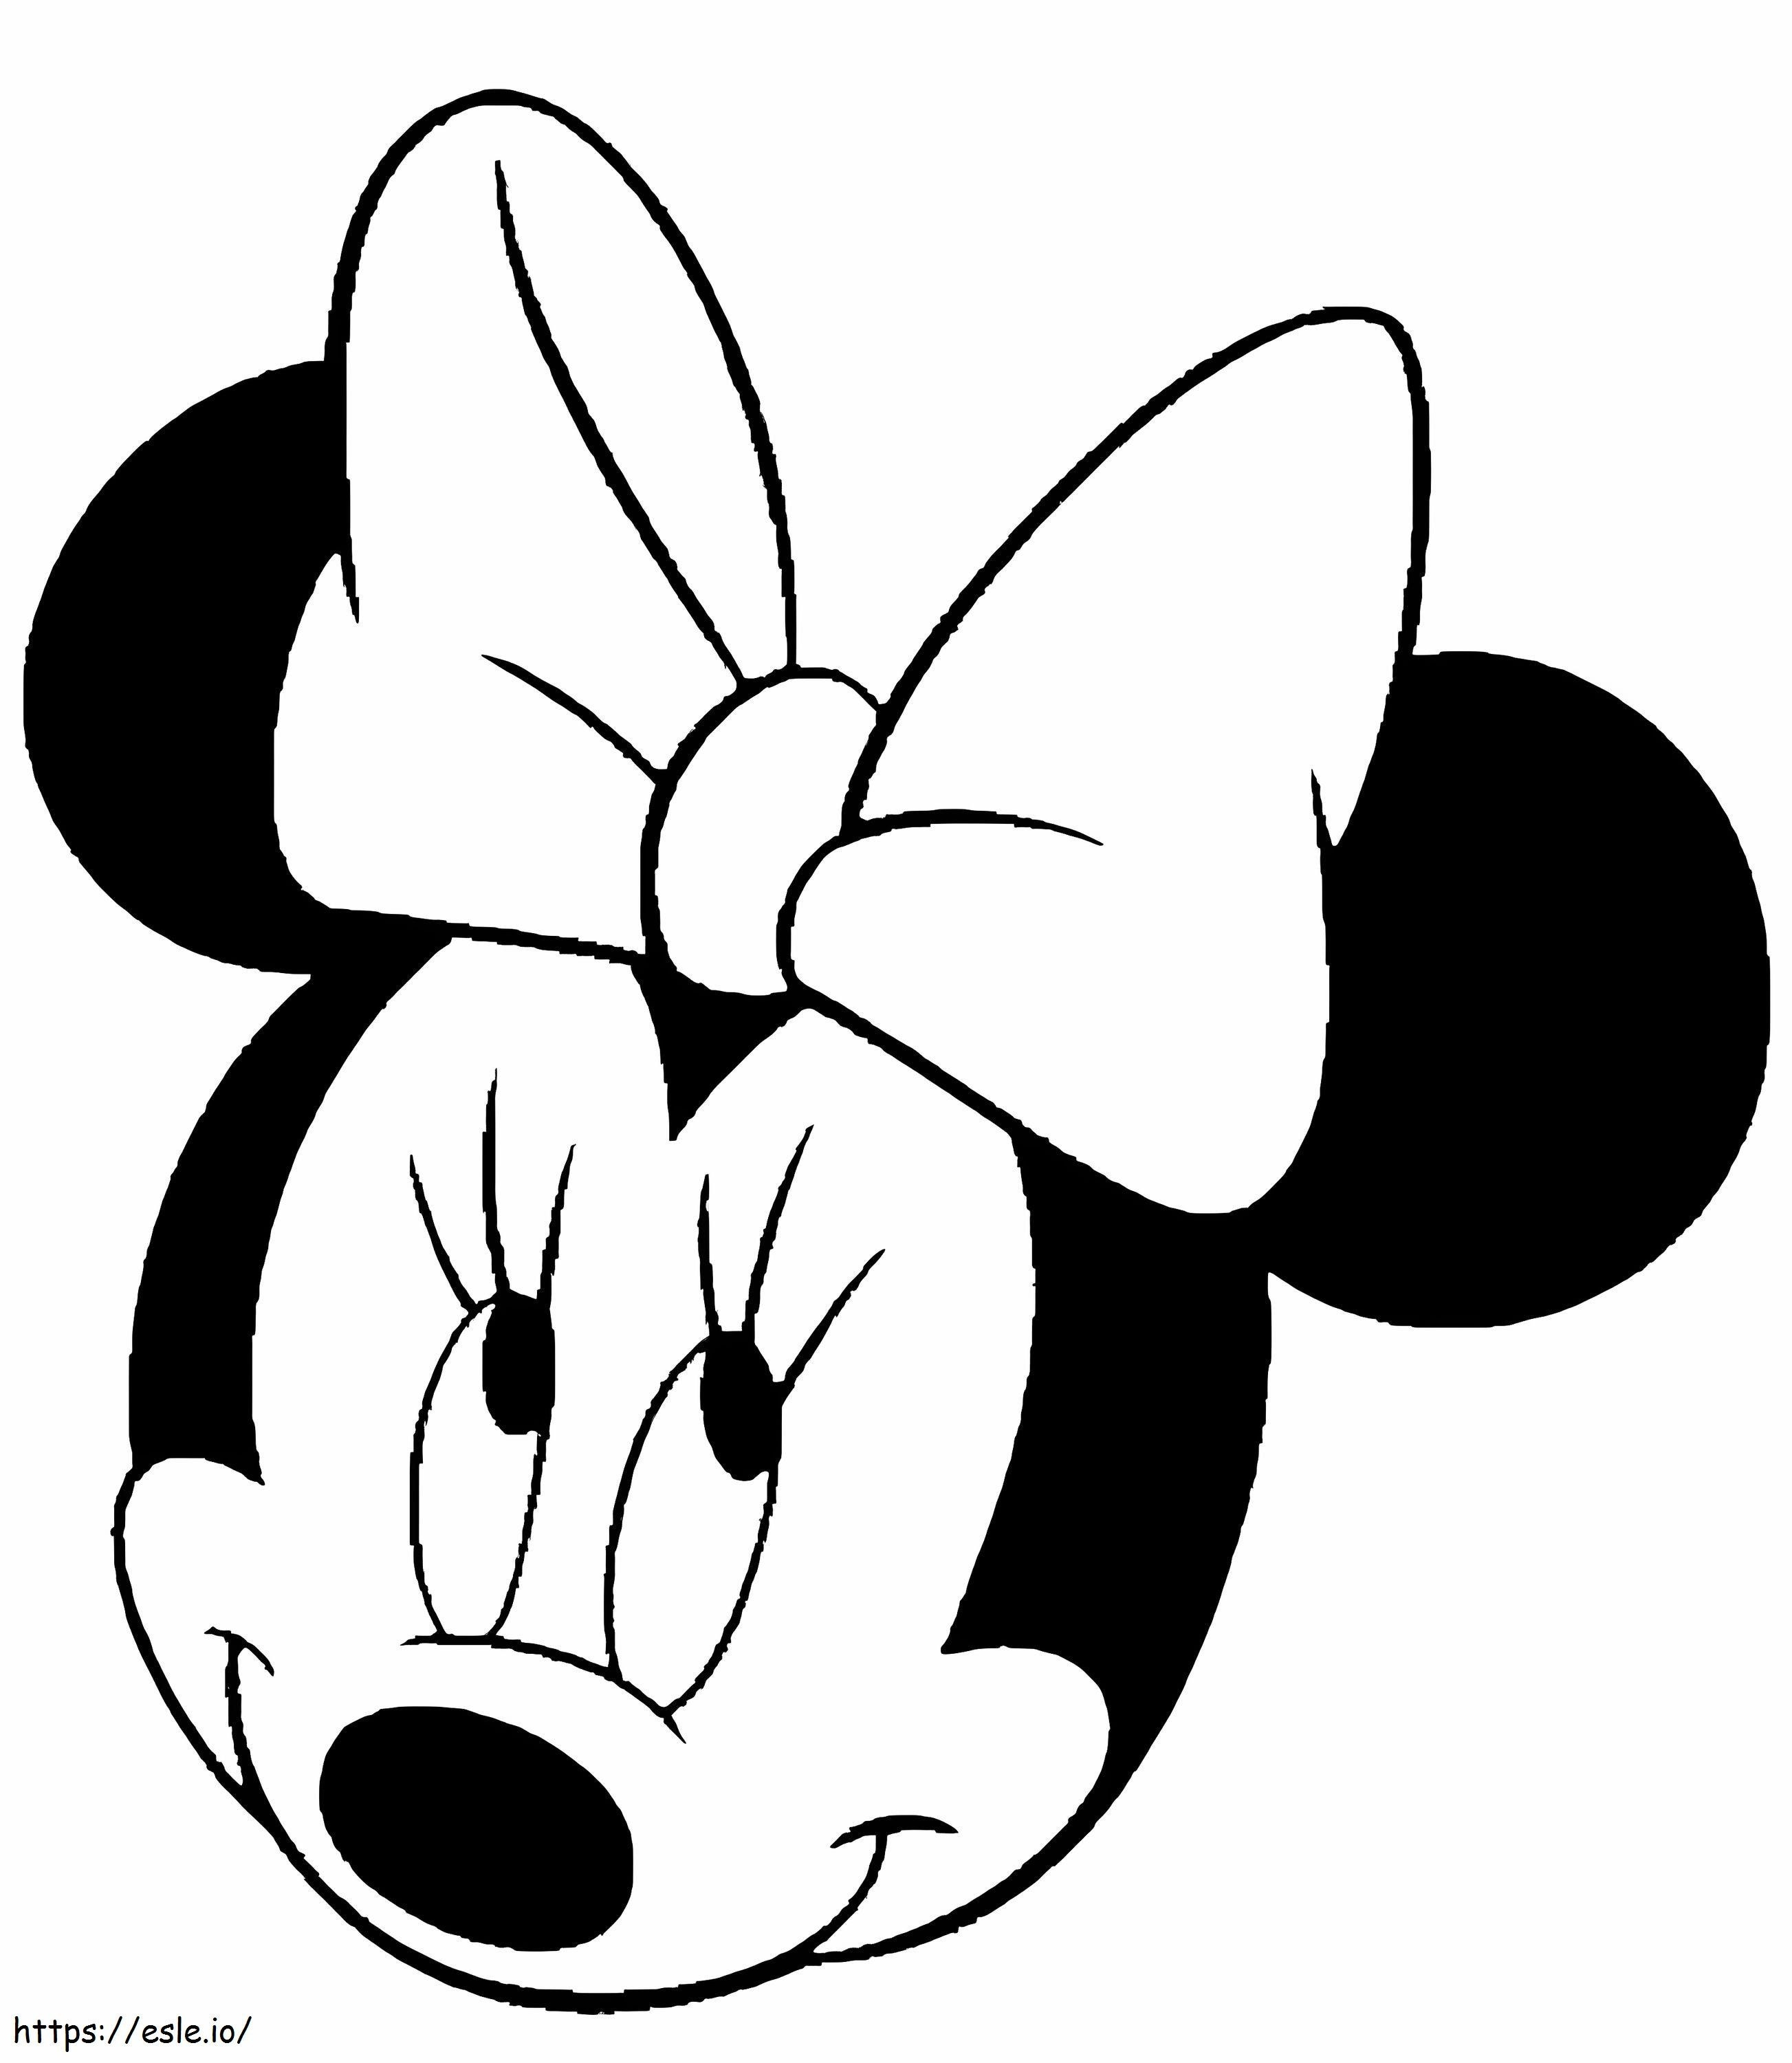 Cabeça sorridente da Minnie Mouse para colorir